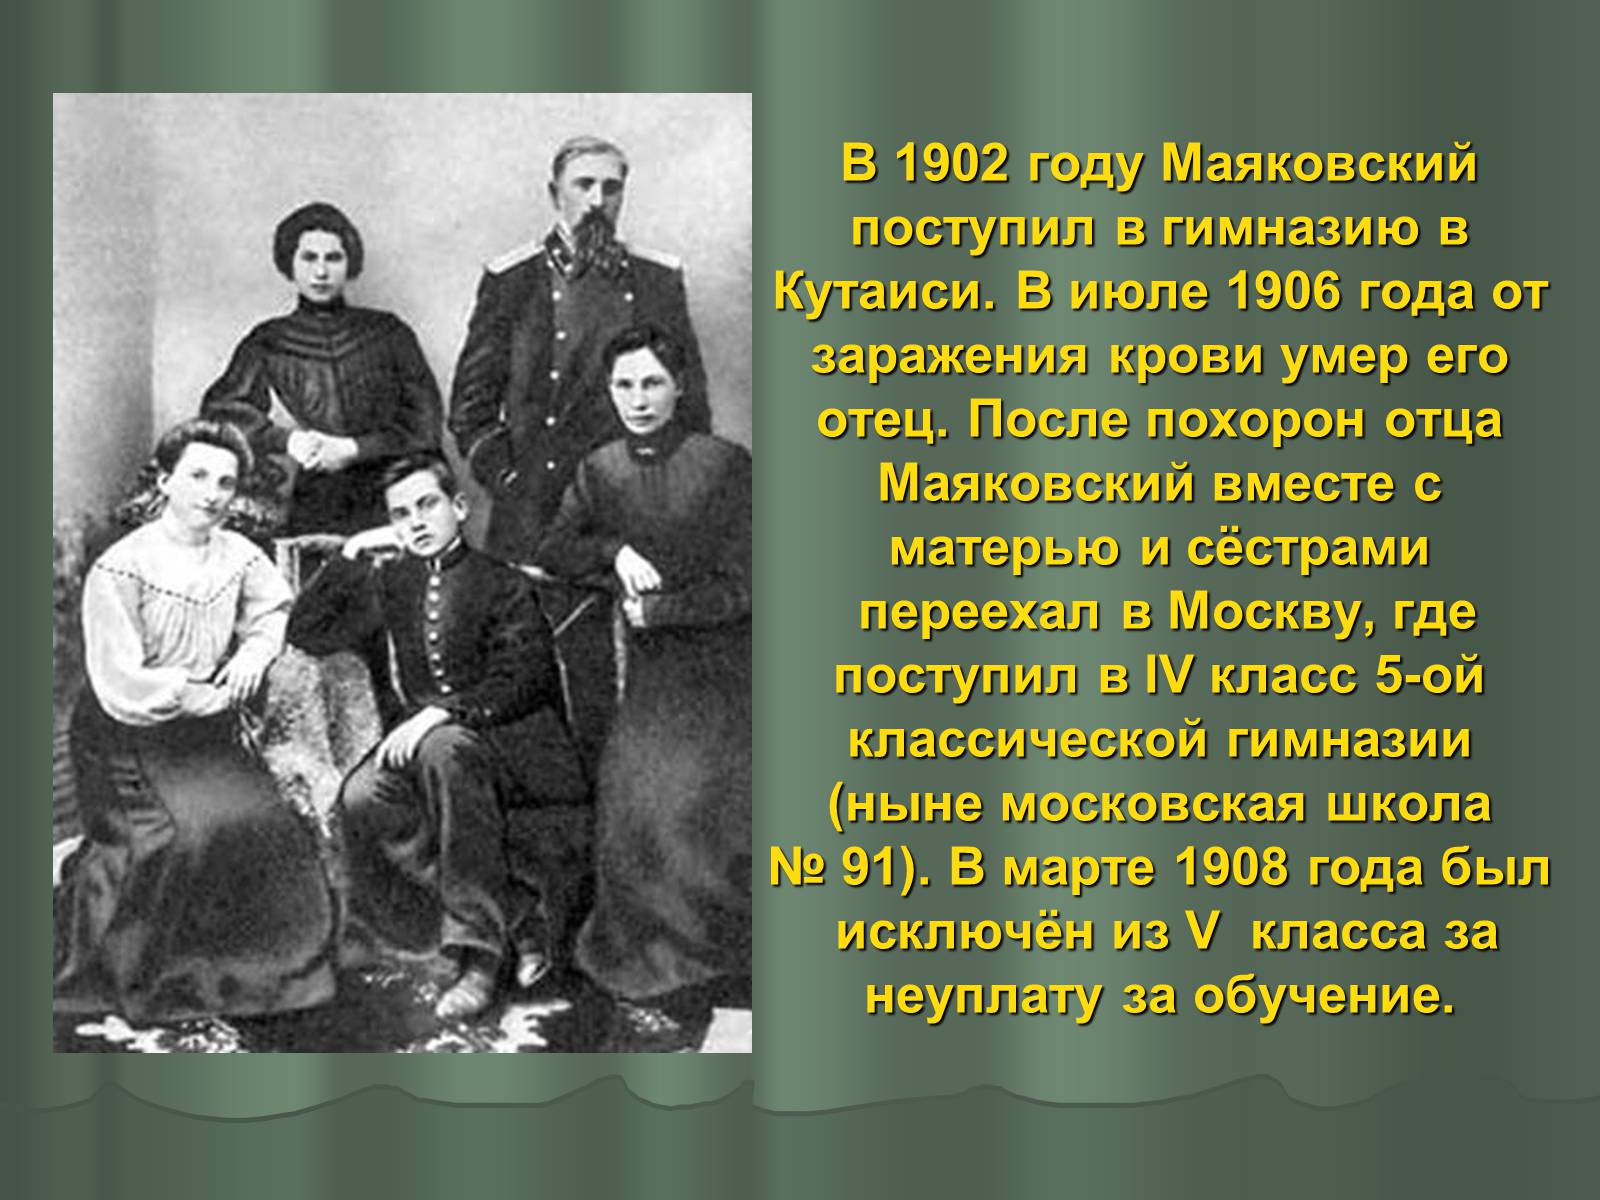 Презентация маяковский 9 класс. В 1902 году Маяковский поступил в гимназию в Кутаиси.. Маяковский Кутаиси 1902. Маяковский в 1906 году.